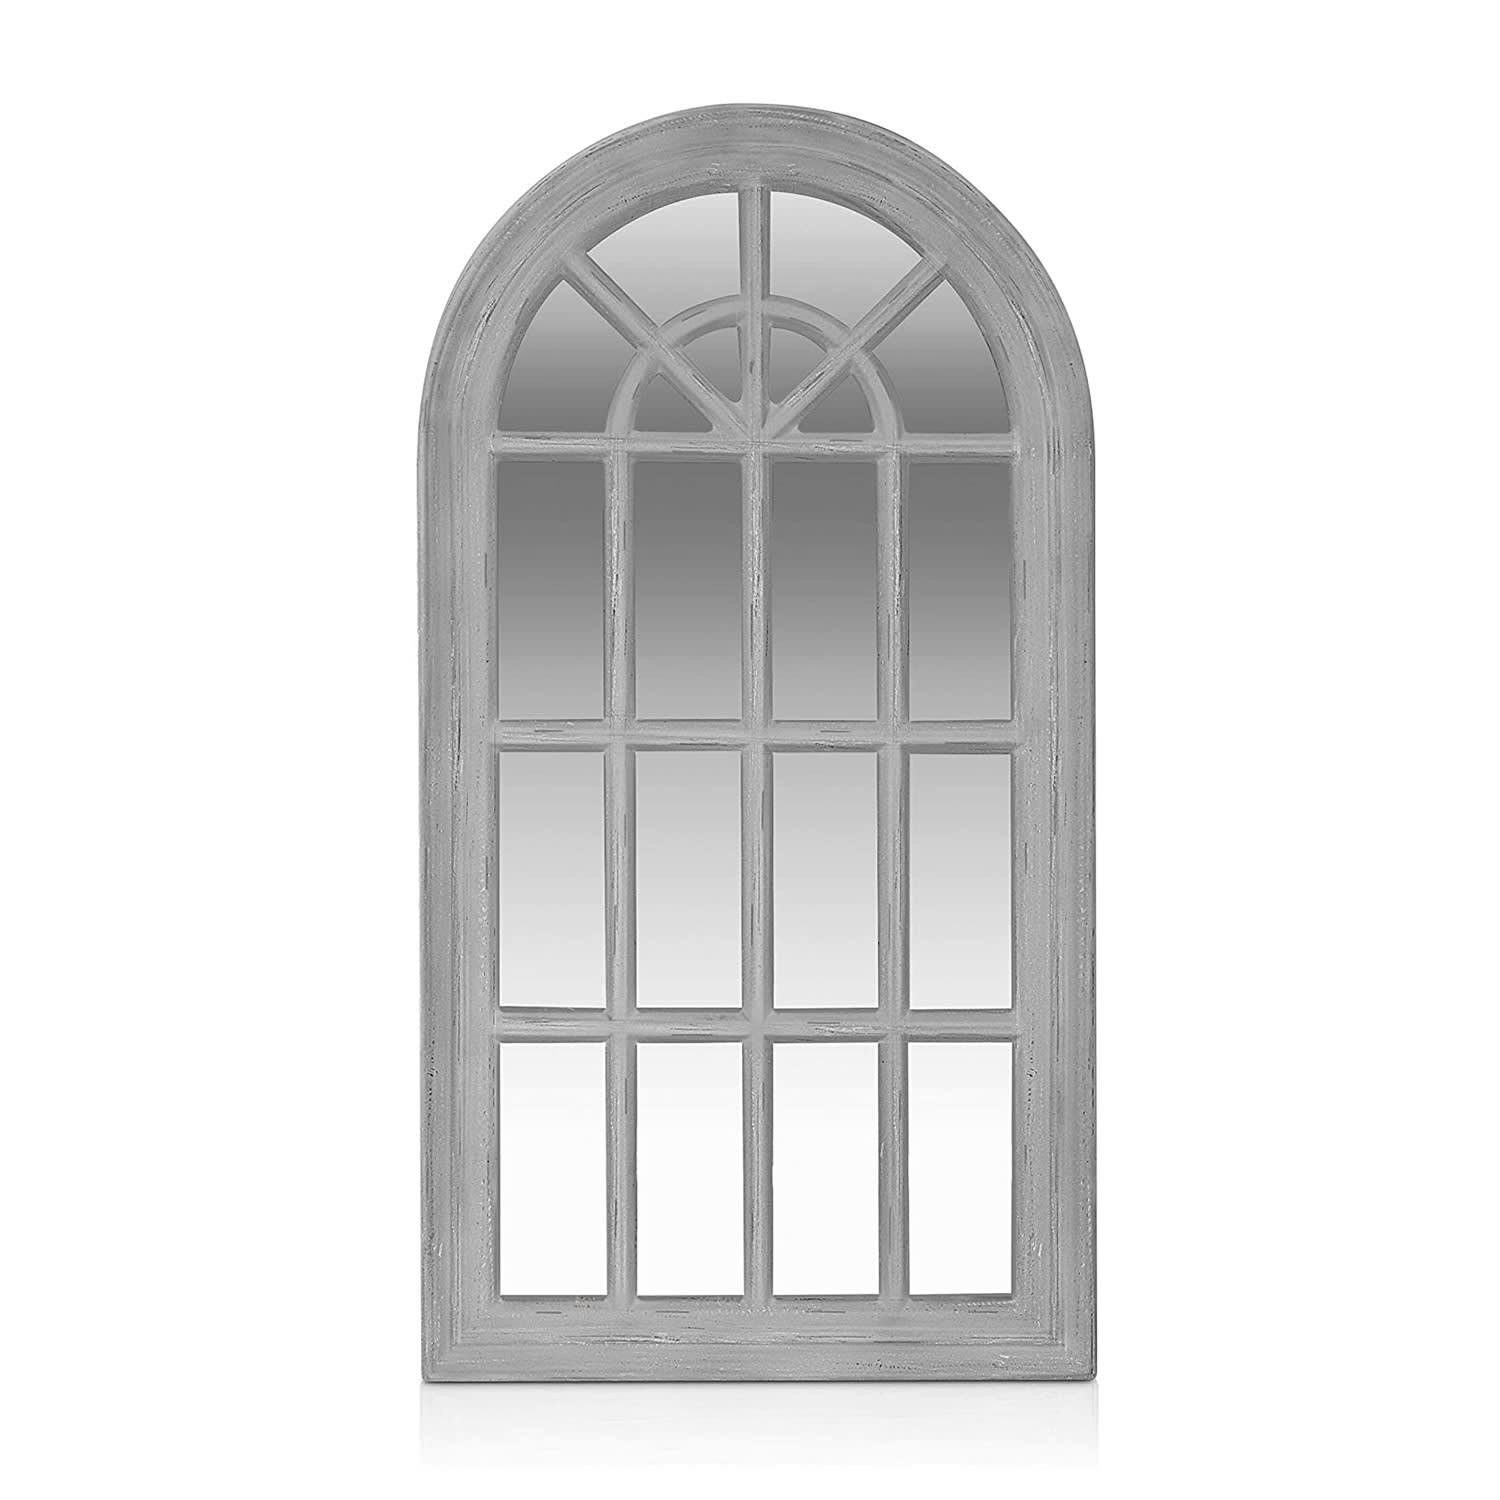 Casa Chic Spiegel Savile Französischer Fensterspiegel 86 x 46 cm